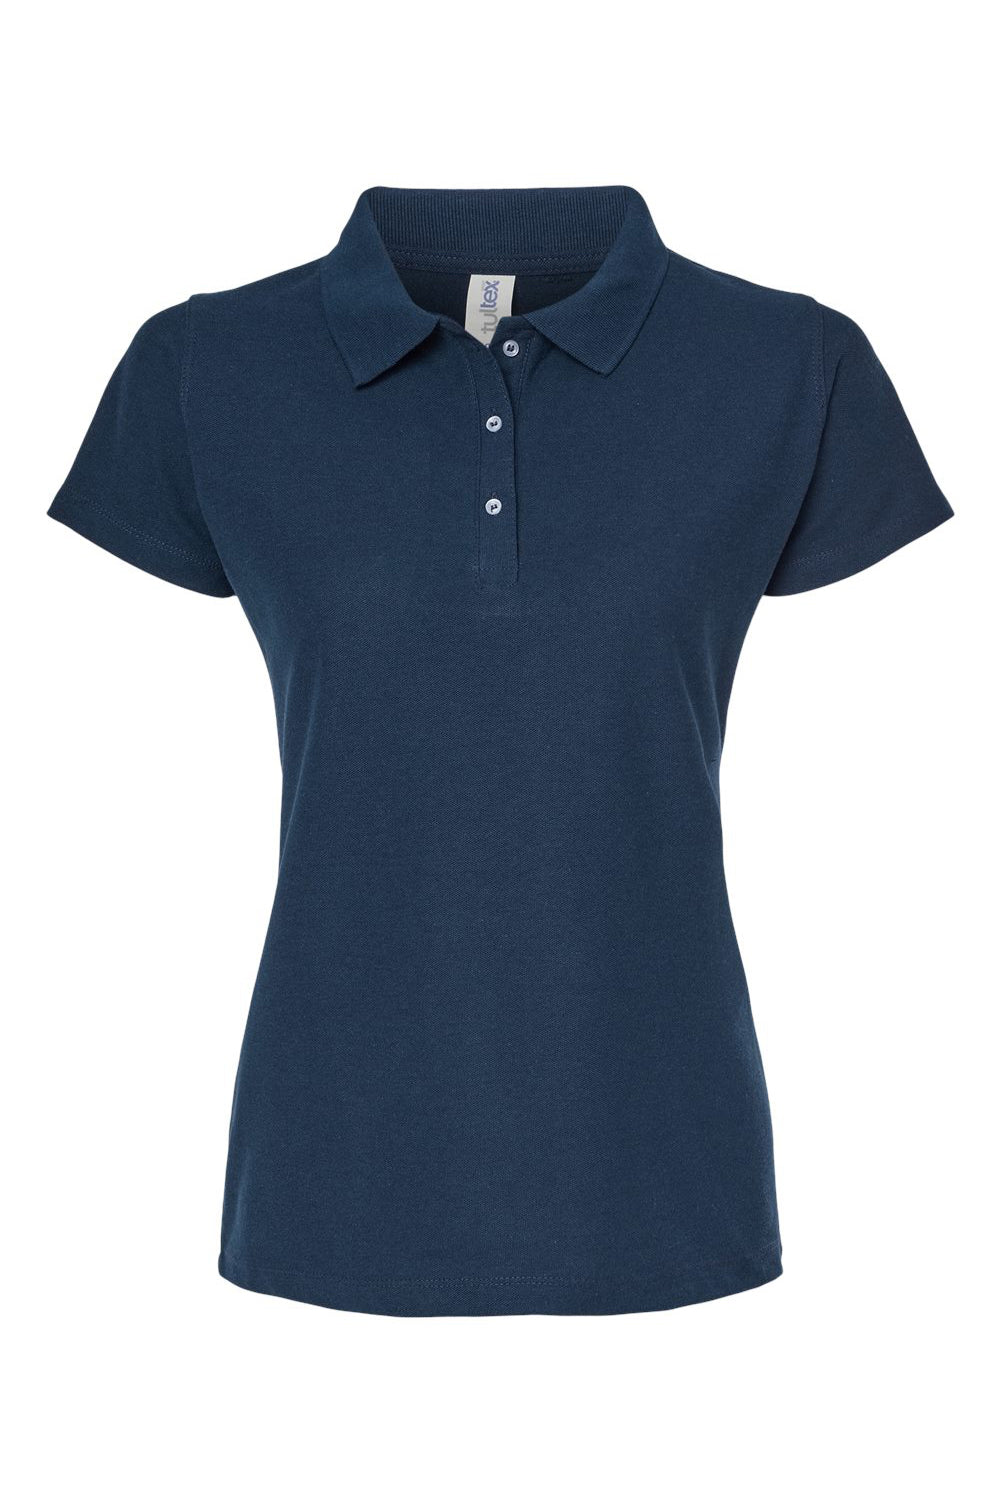 Tultex 401 Womens Sport Shirt Sleeve Polo Shirt Navy Blue Flat Front